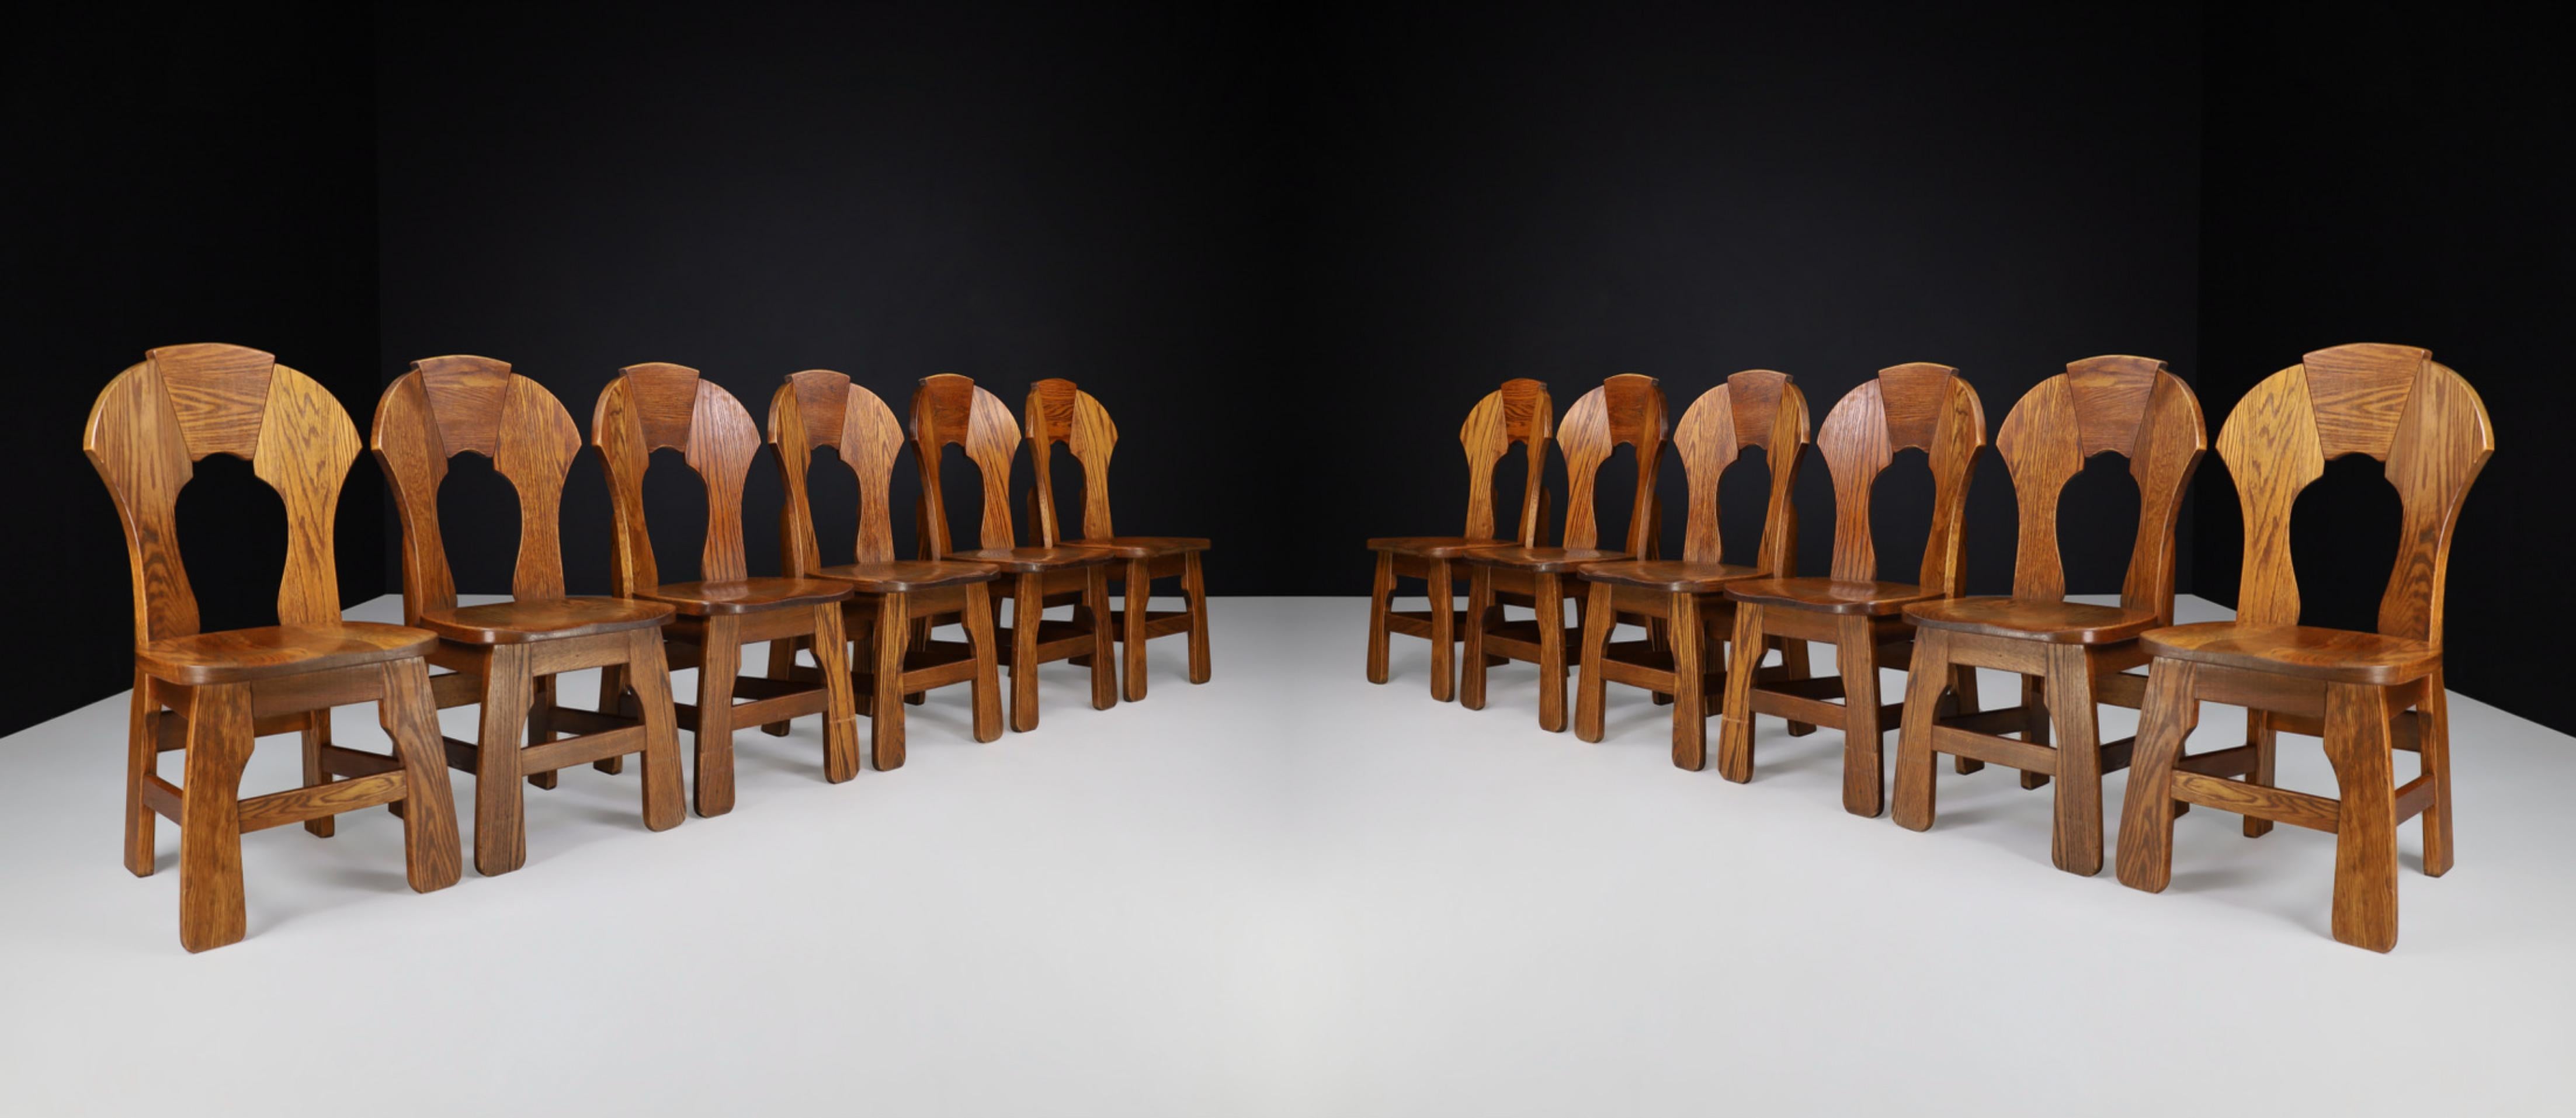 Brutalistische Esszimmerstühle aus Eiche, Frankreich, 1960er Jahre 

Ein umfangreicher Satz von zwölf Eichen-Esszimmerstühlen mit gebogener Rückenlehne, Frankreich 1960er Jahre. Diese brutalistischen Stühle sind vollständig aus massivem Eichenholz